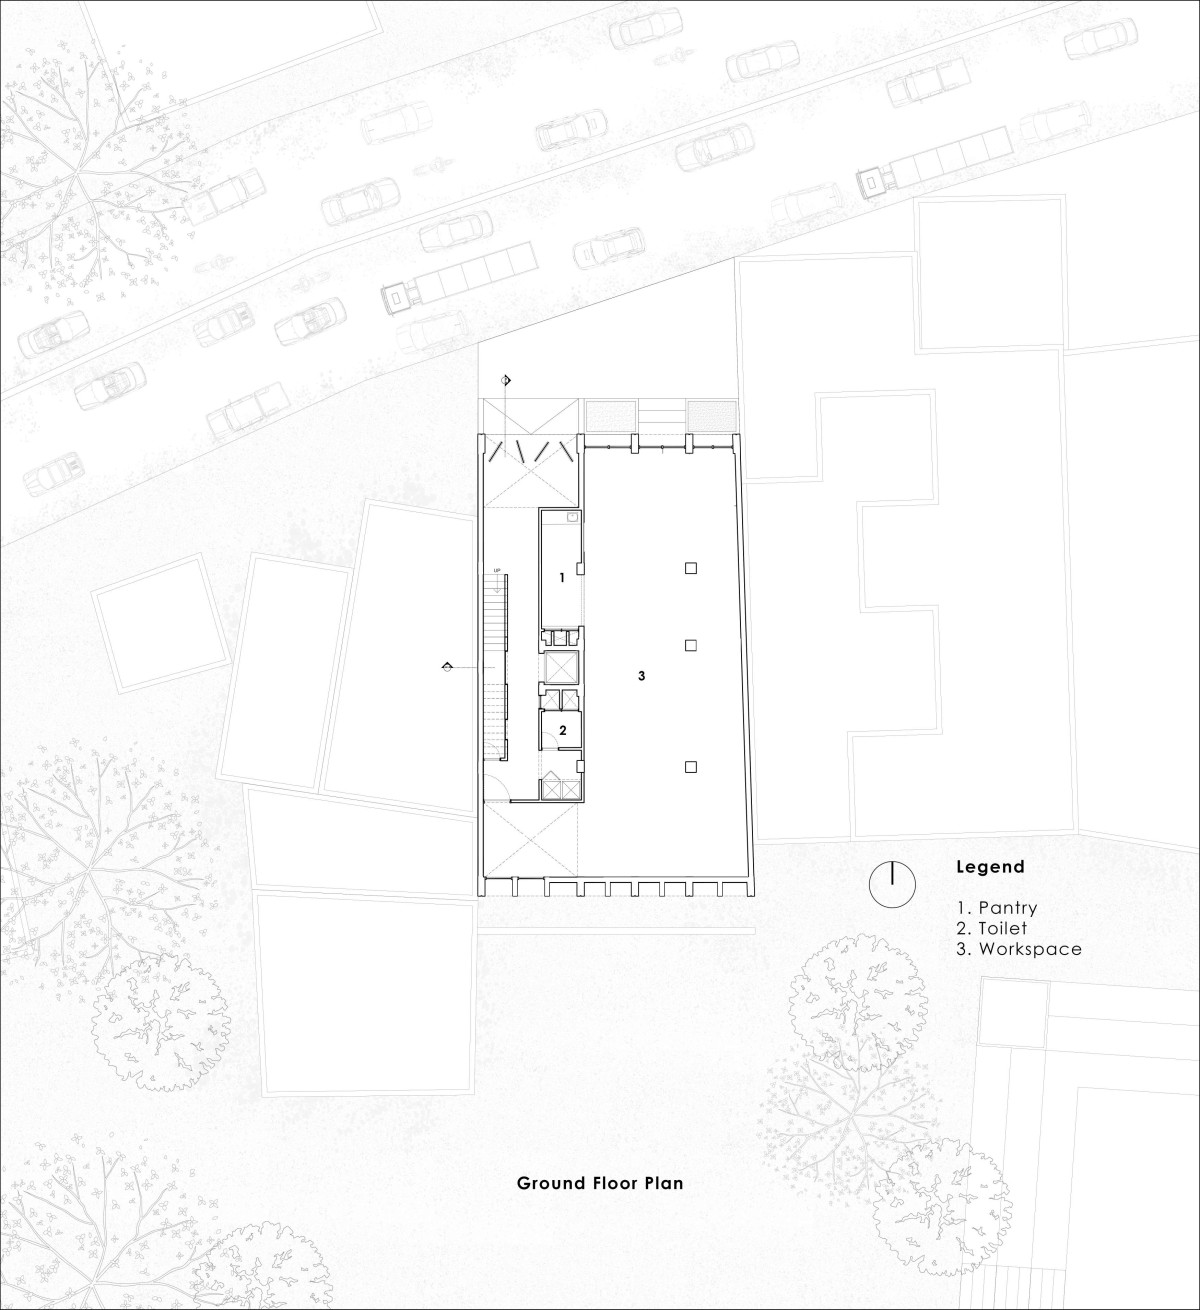 Ground floor plan of Veiled Building by KUN Studio